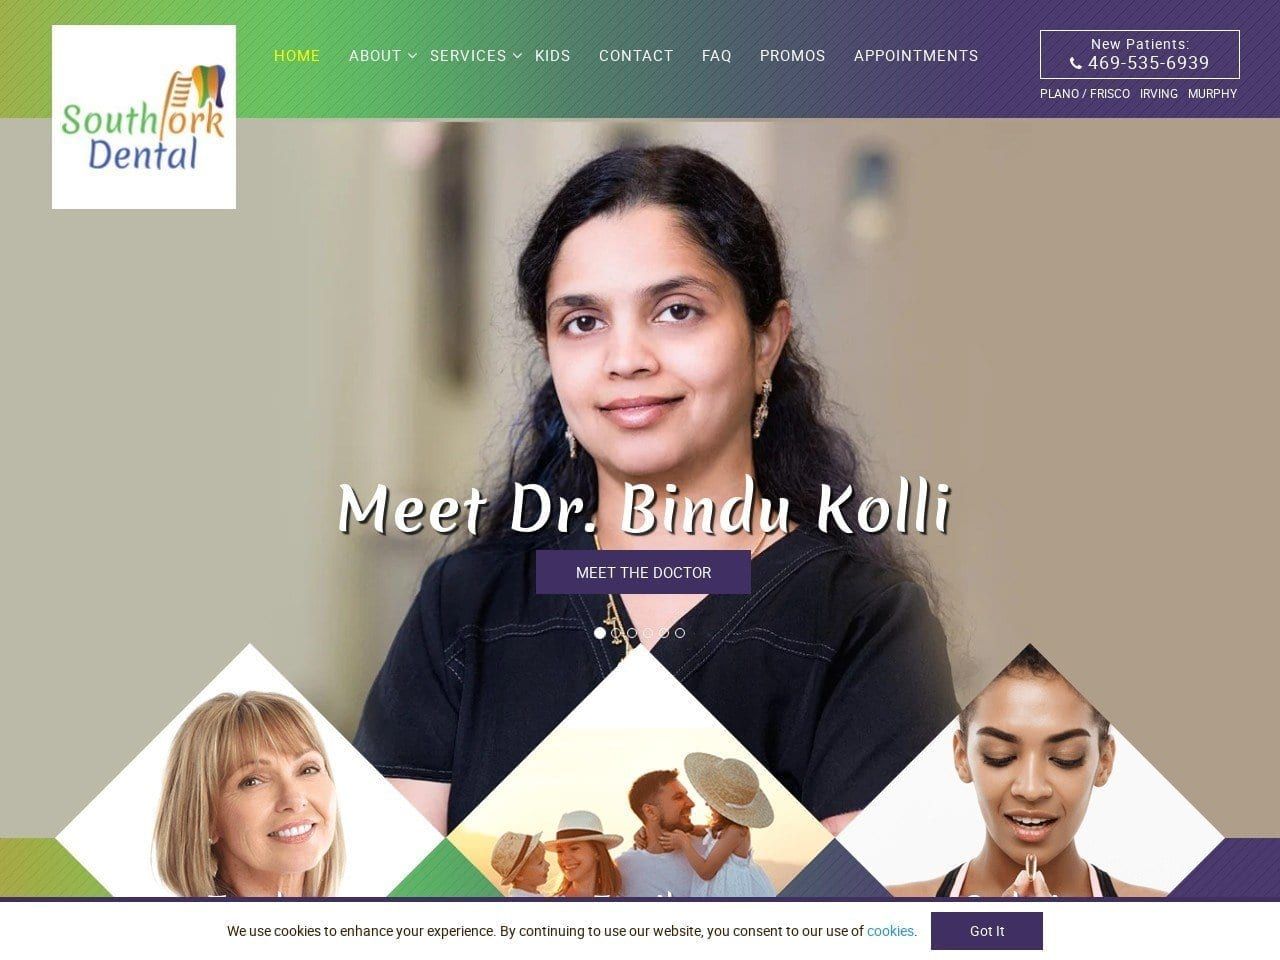 Southfork Dental Kolli Bindu DDS Website Screenshot from southforkdental.com